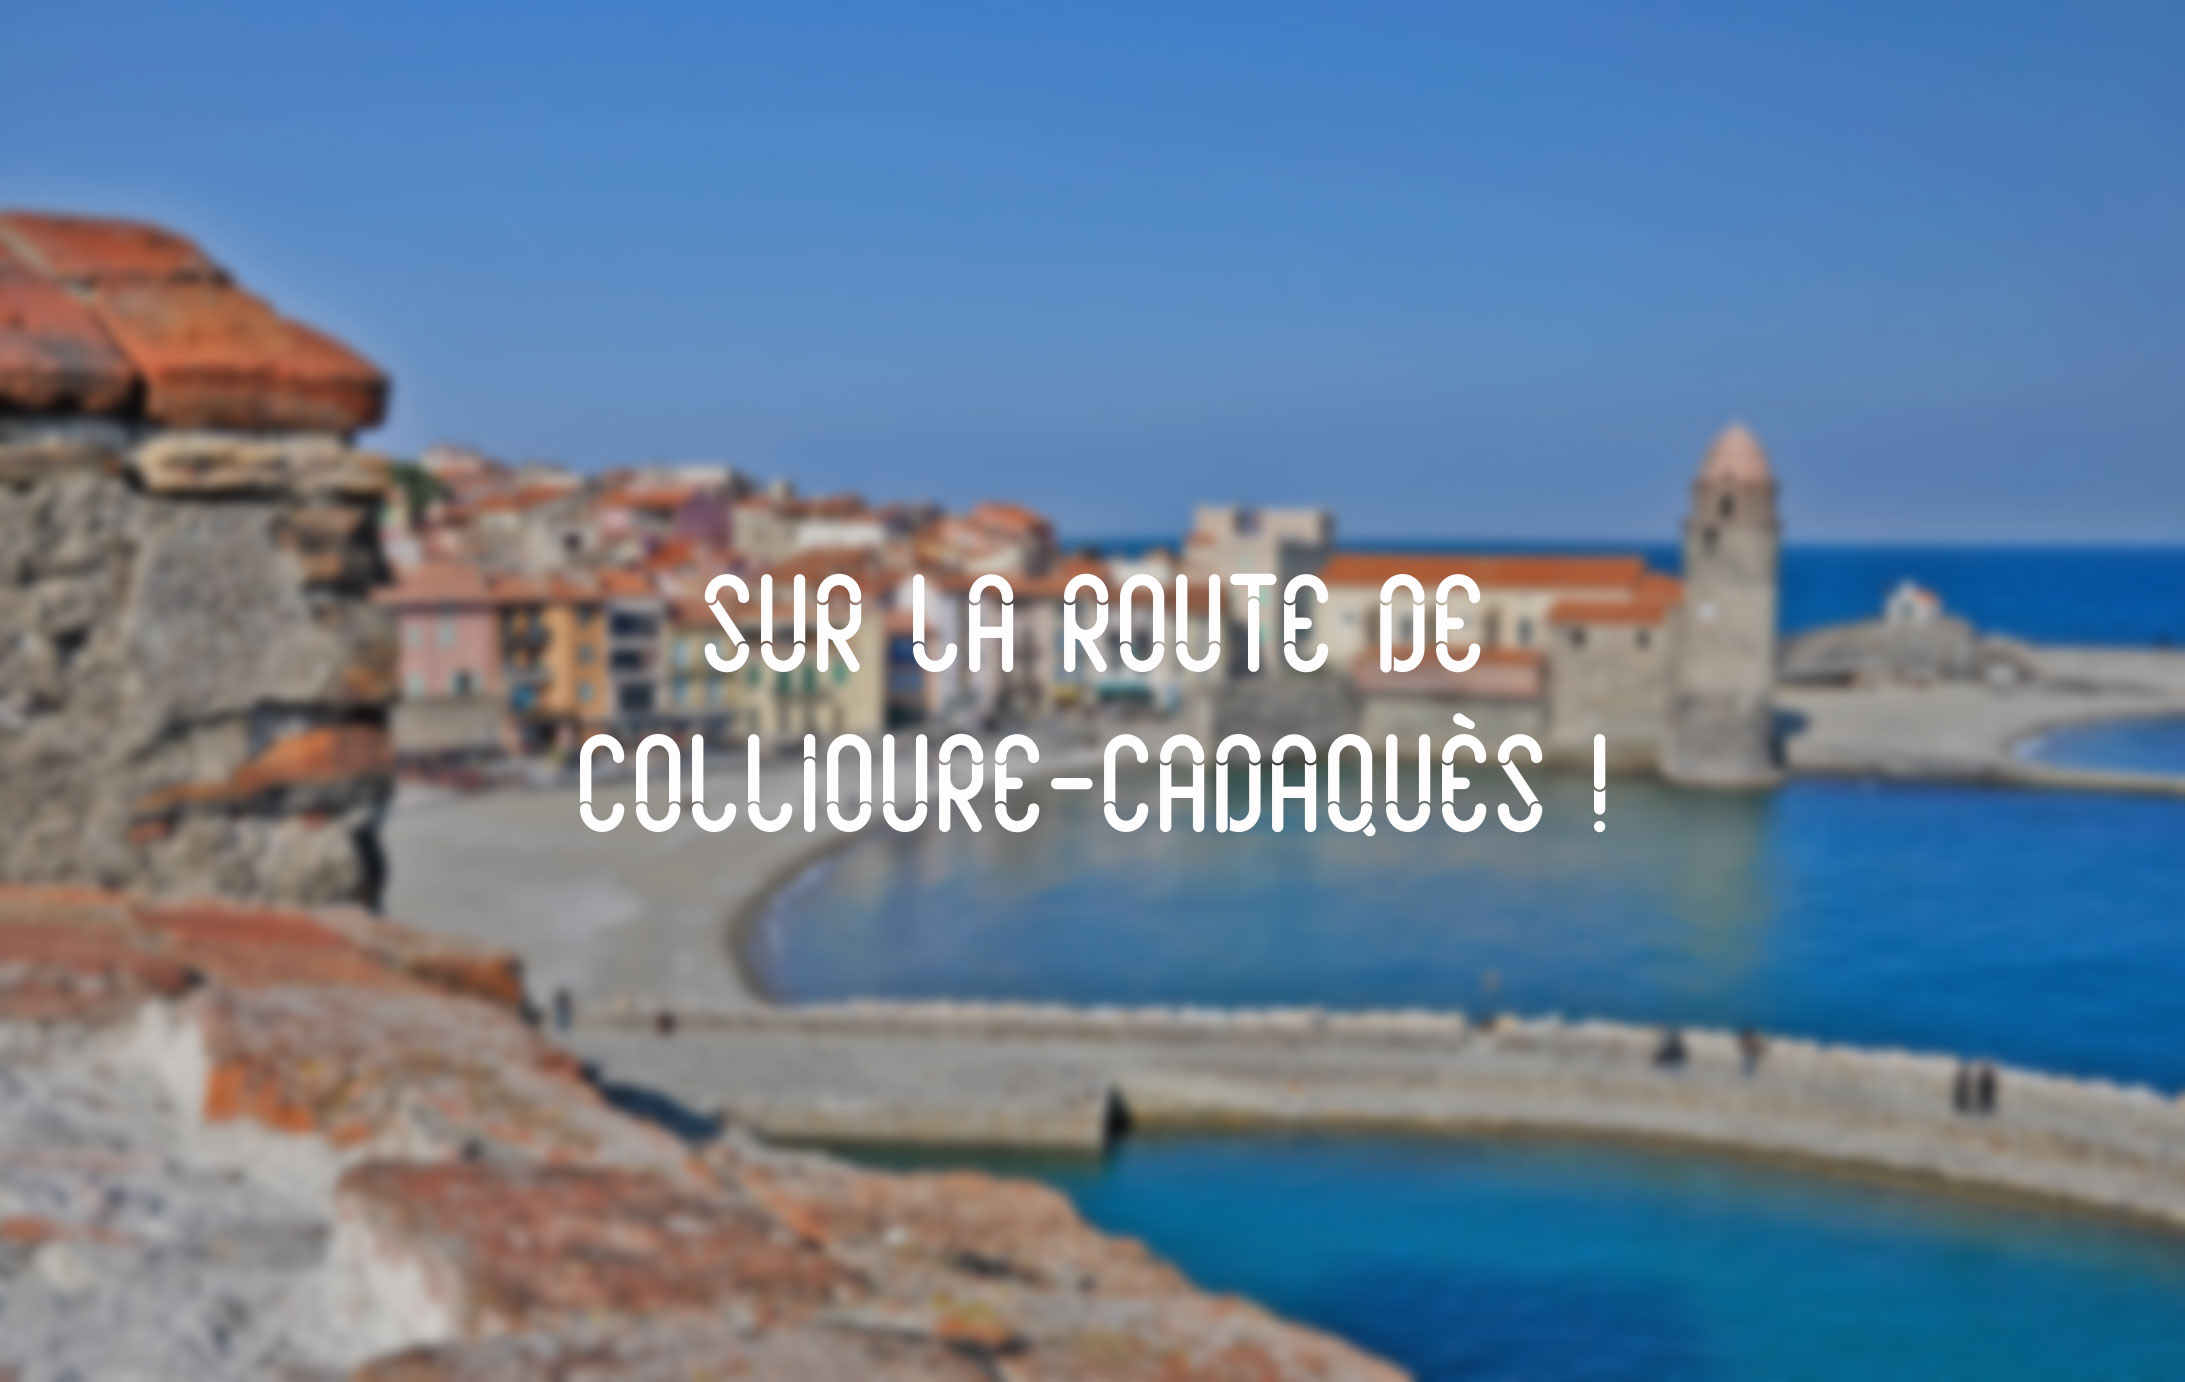 Collioure-Cadaqués, © Randonades